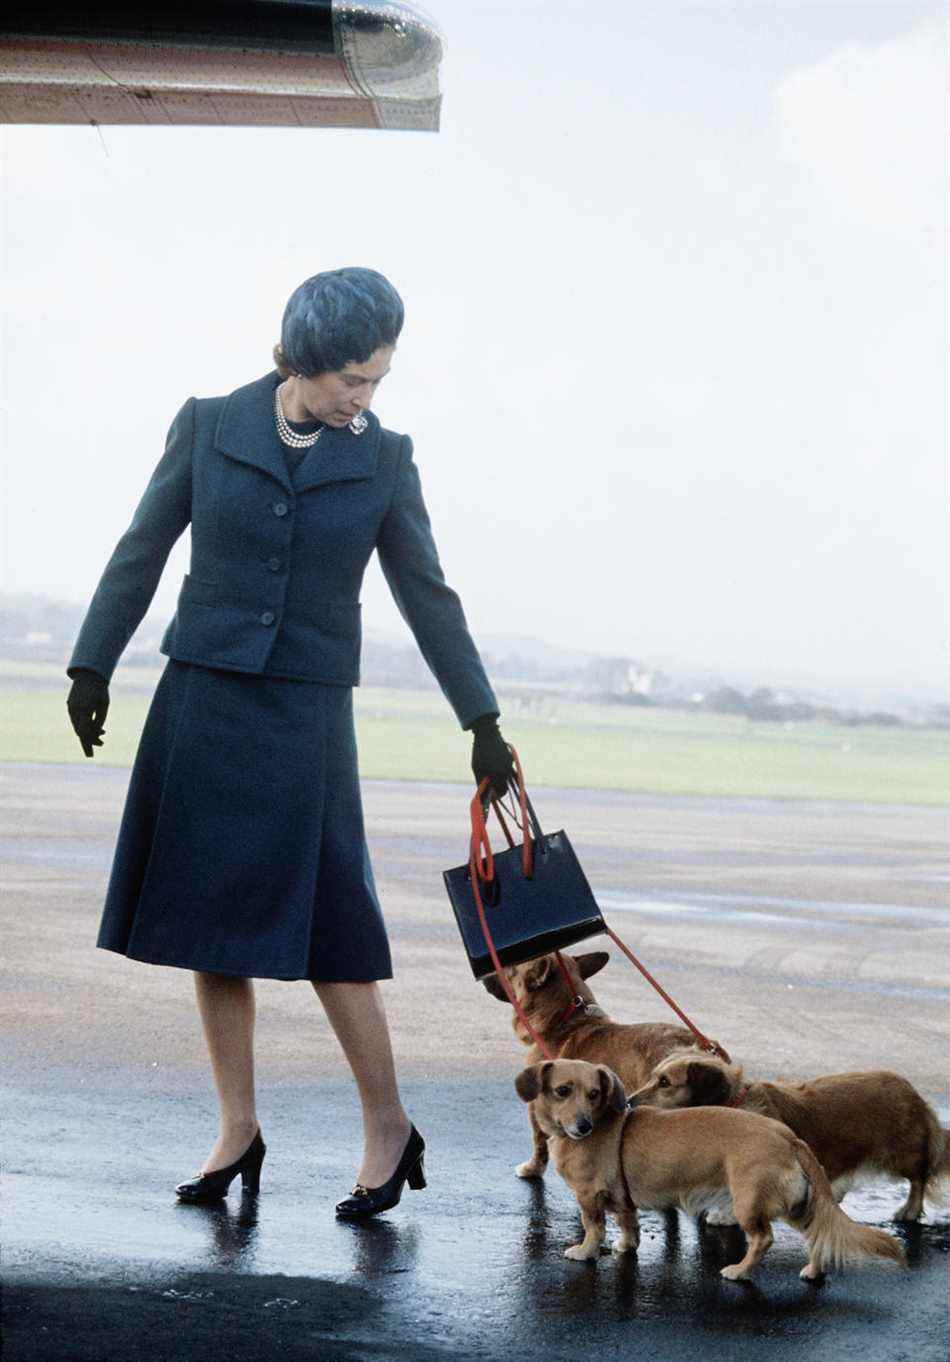 La reine Elizabeth II arrive à l'aéroport d'Aberdeen avec ses corgis pour commencer ses vacances à Balmoral, en Écosse, en 1974. (Getty Images)